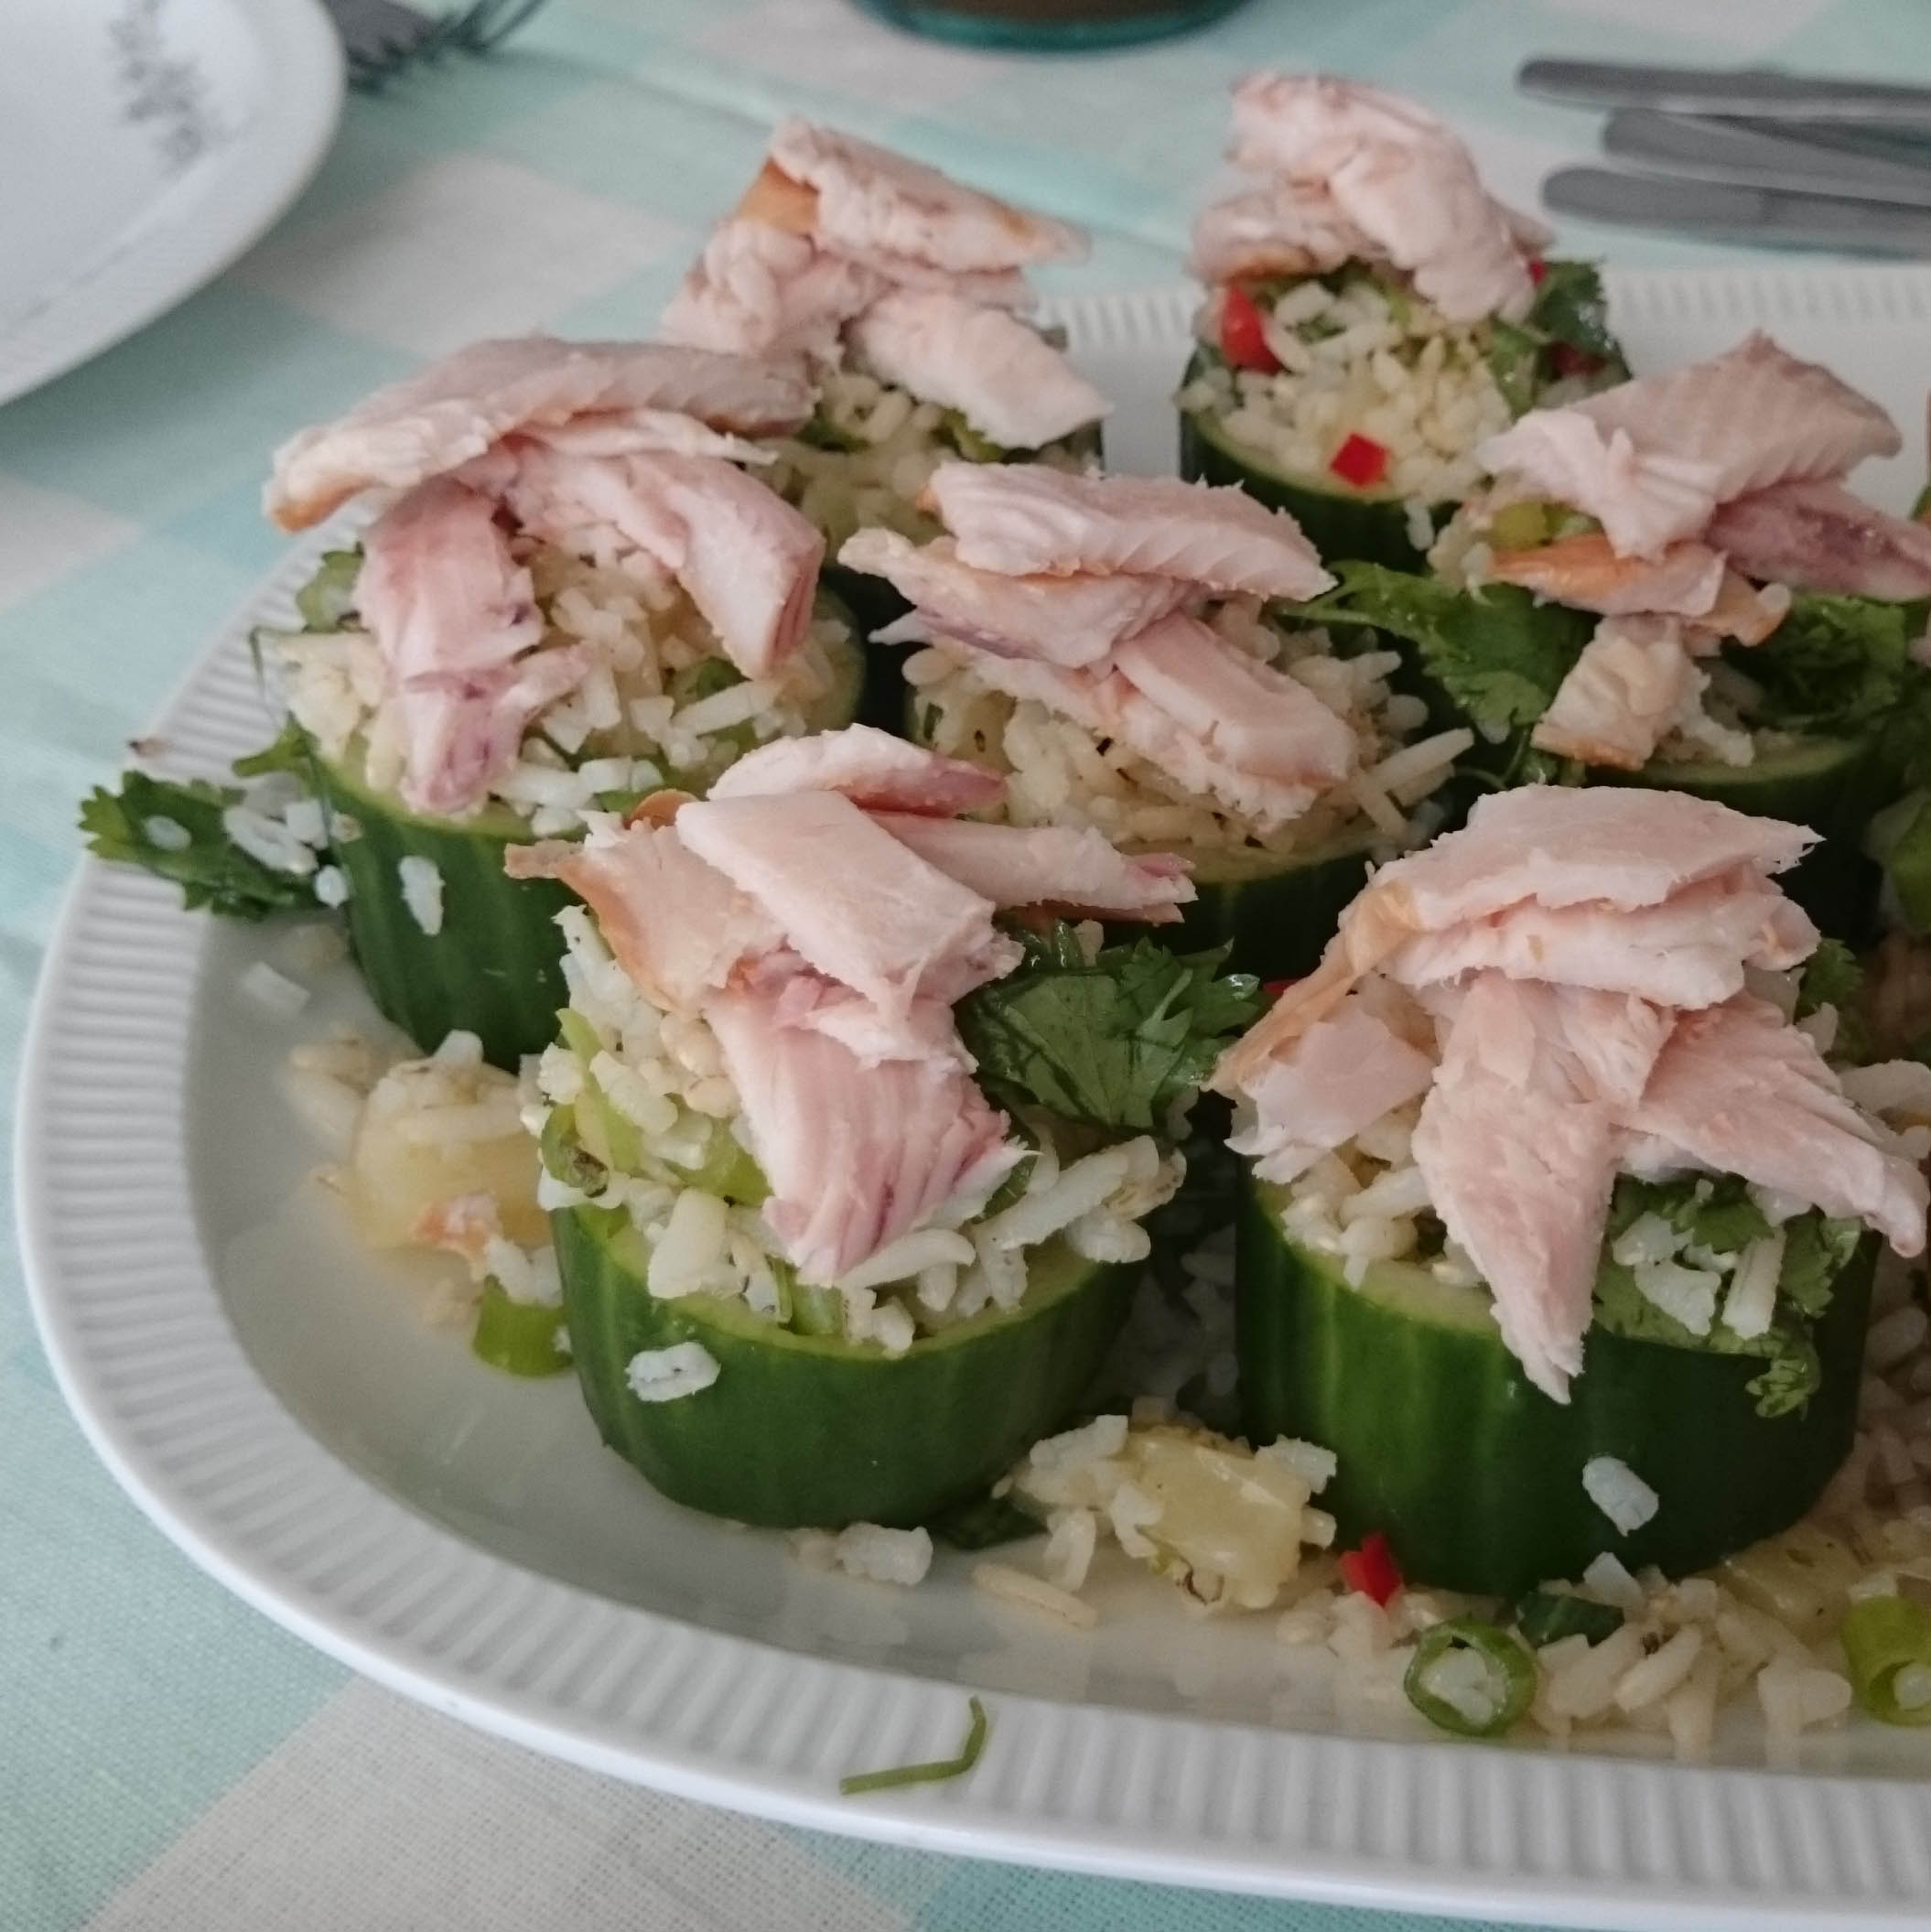 Recept van Willemijn: Komkommer gevuld met Rijst en Forel